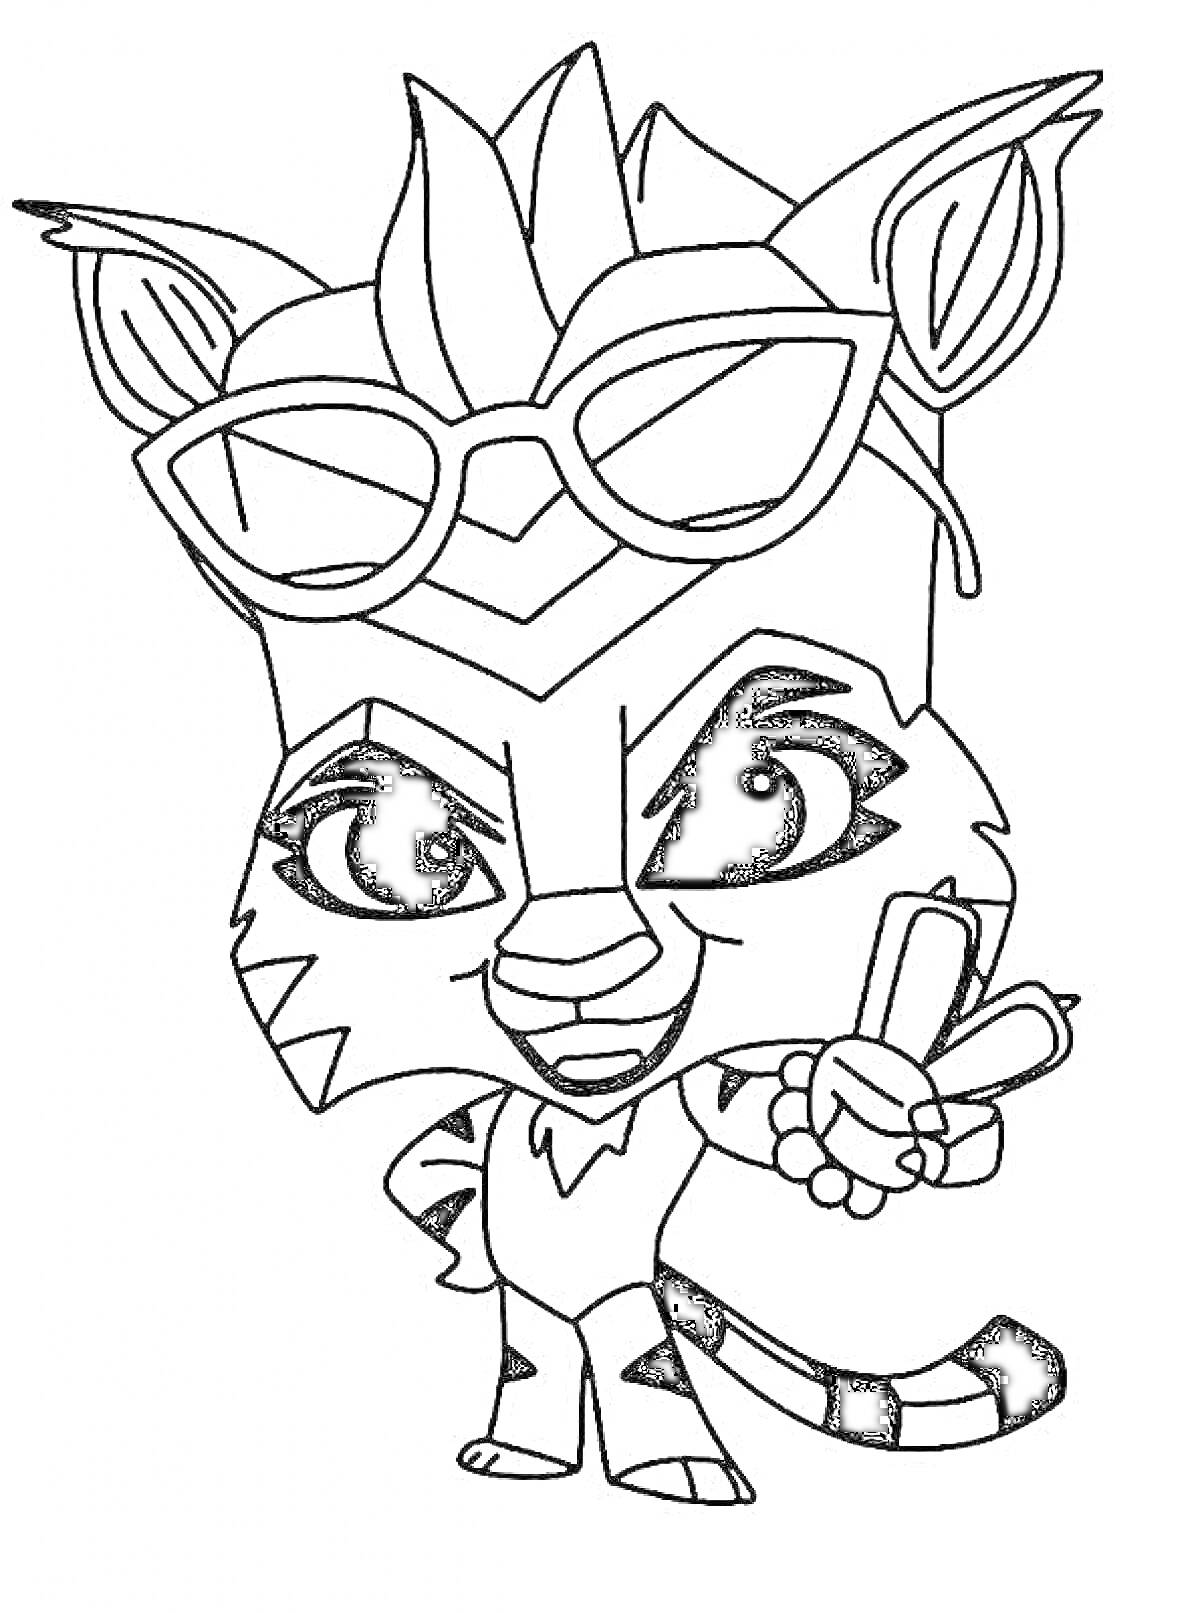 Раскраска Одетый в очки мультяшный тигр с крыльями в руке